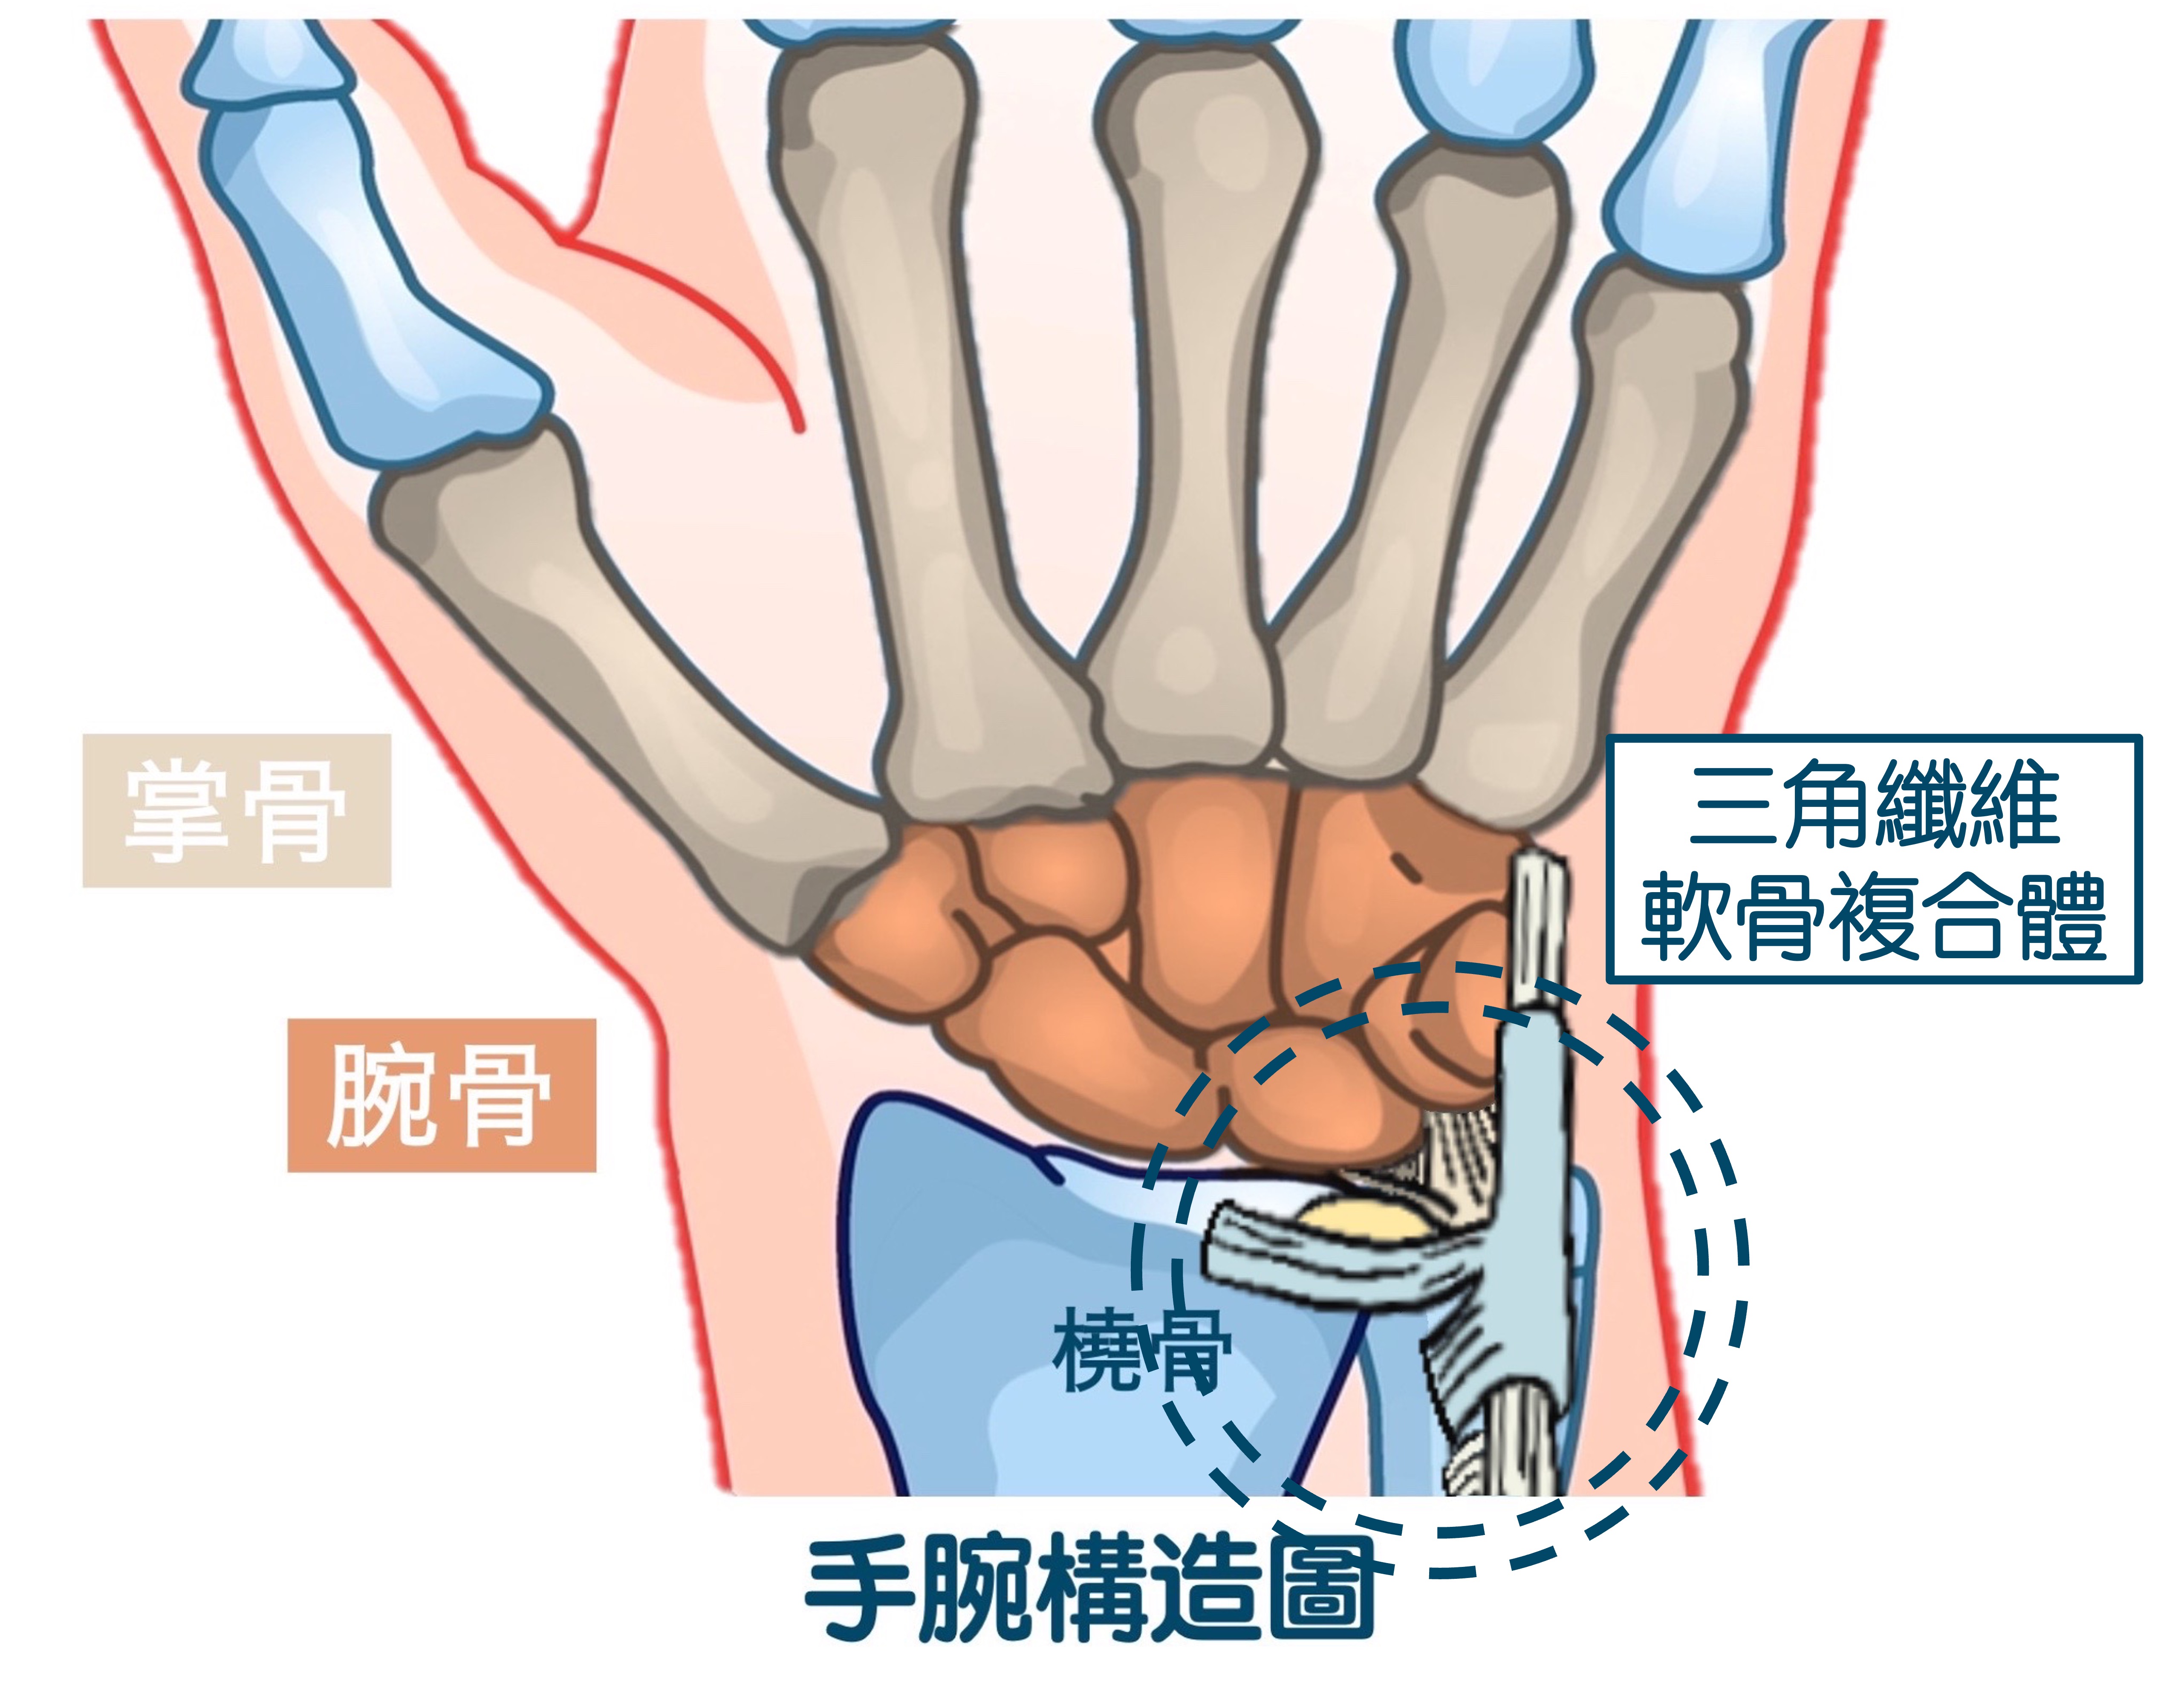 图1-1-36 手骨-人体解剖学与组织生理病理学-医学